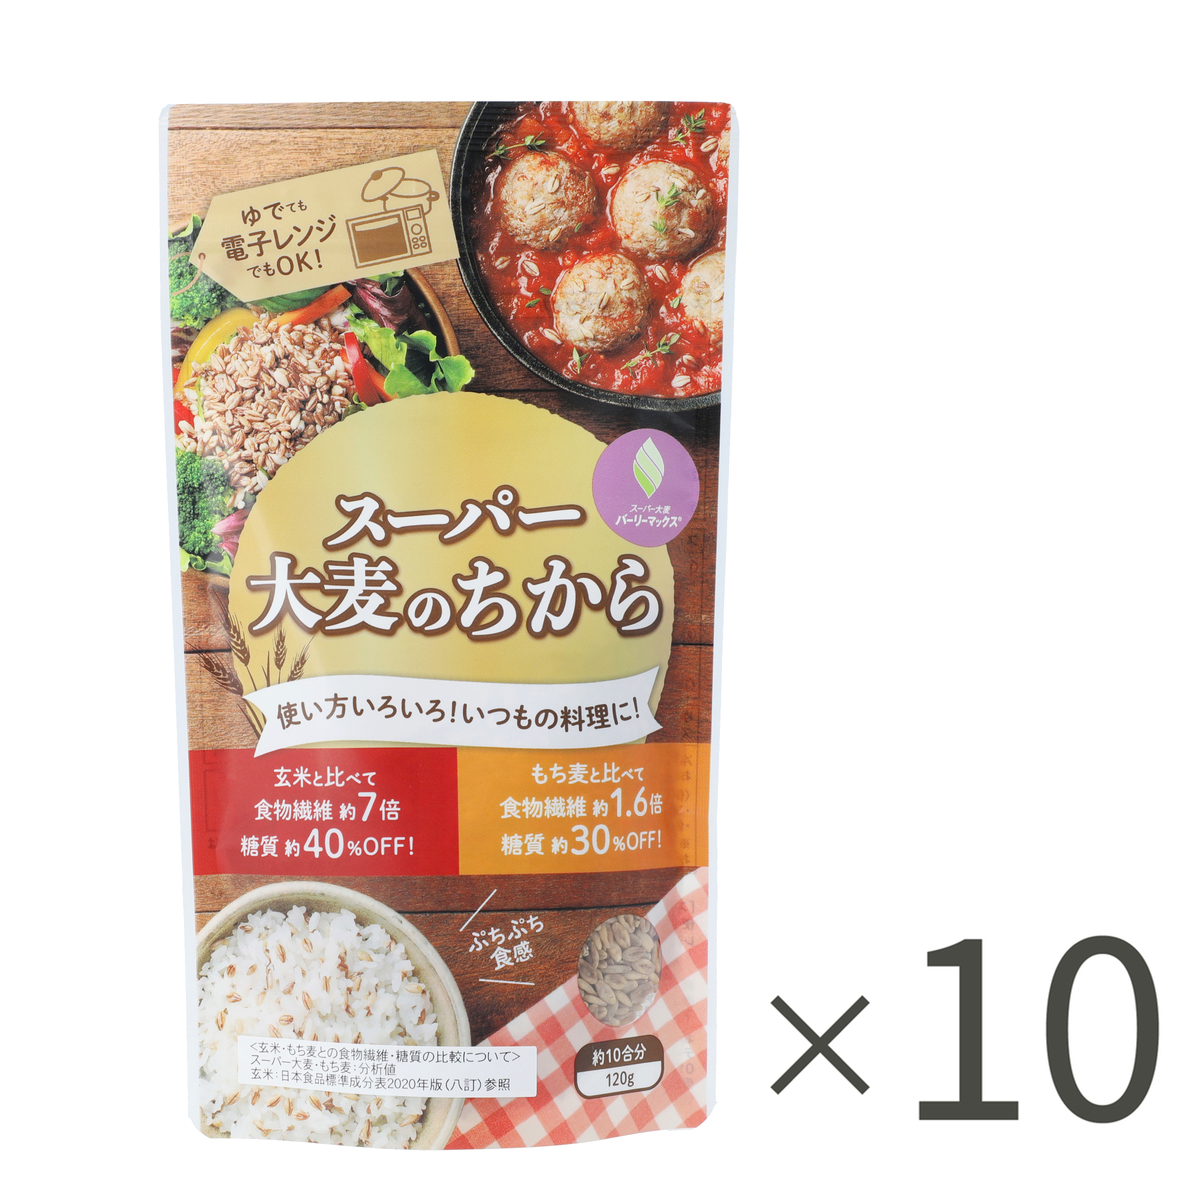 ＜QVCジャパン＞ TEIJINスーパー大麦のちから10袋セットレシピブック付